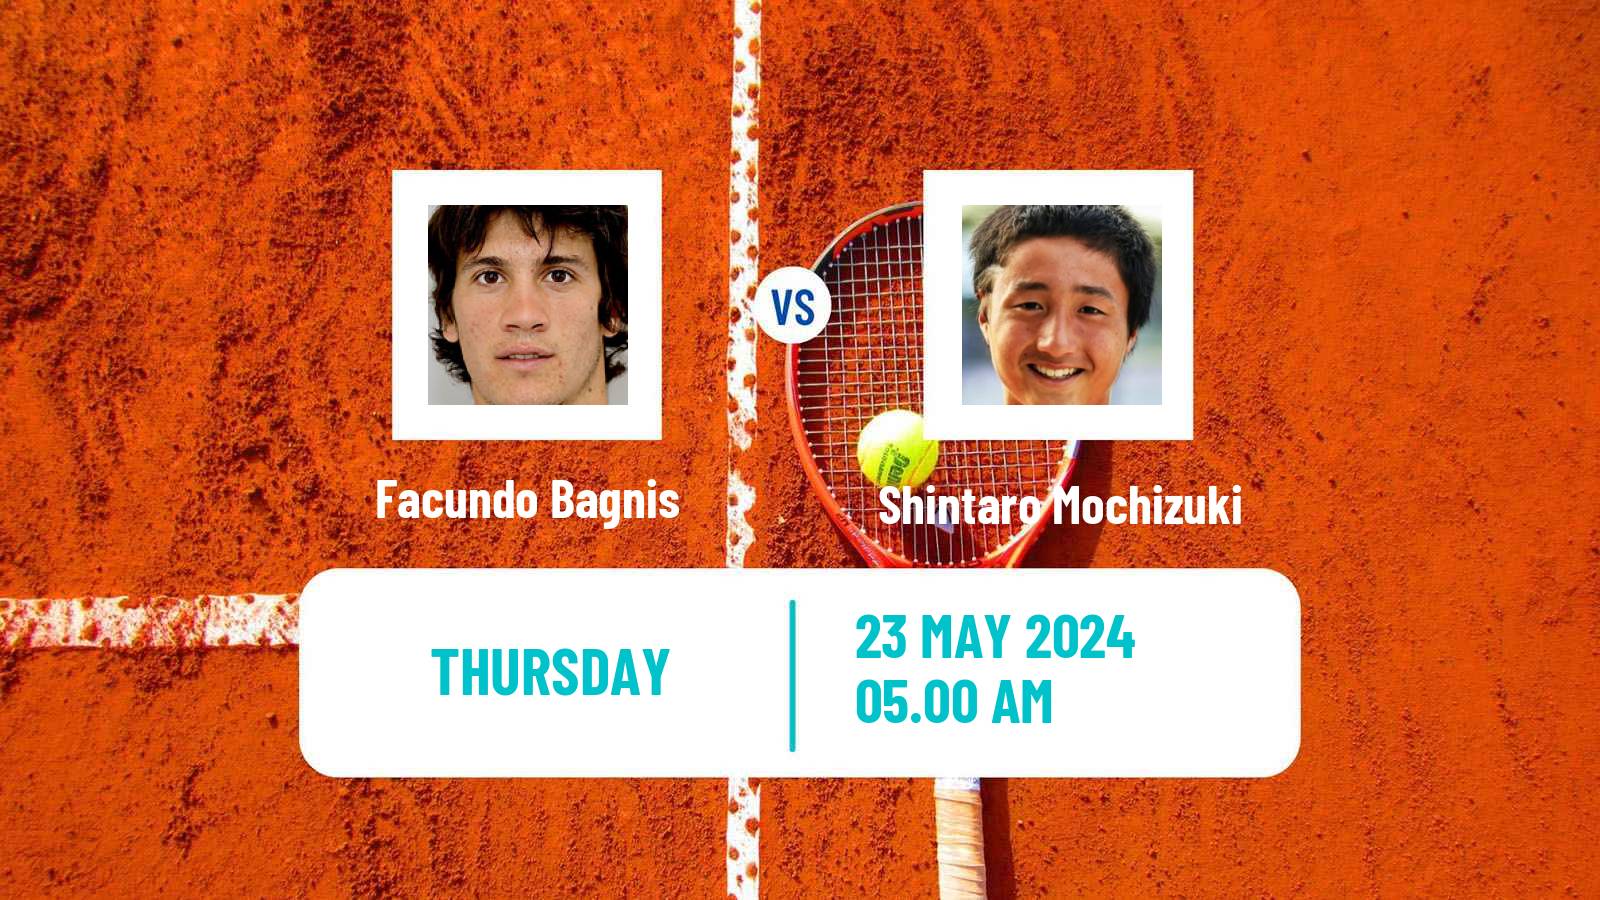 Tennis ATP Roland Garros Facundo Bagnis - Shintaro Mochizuki